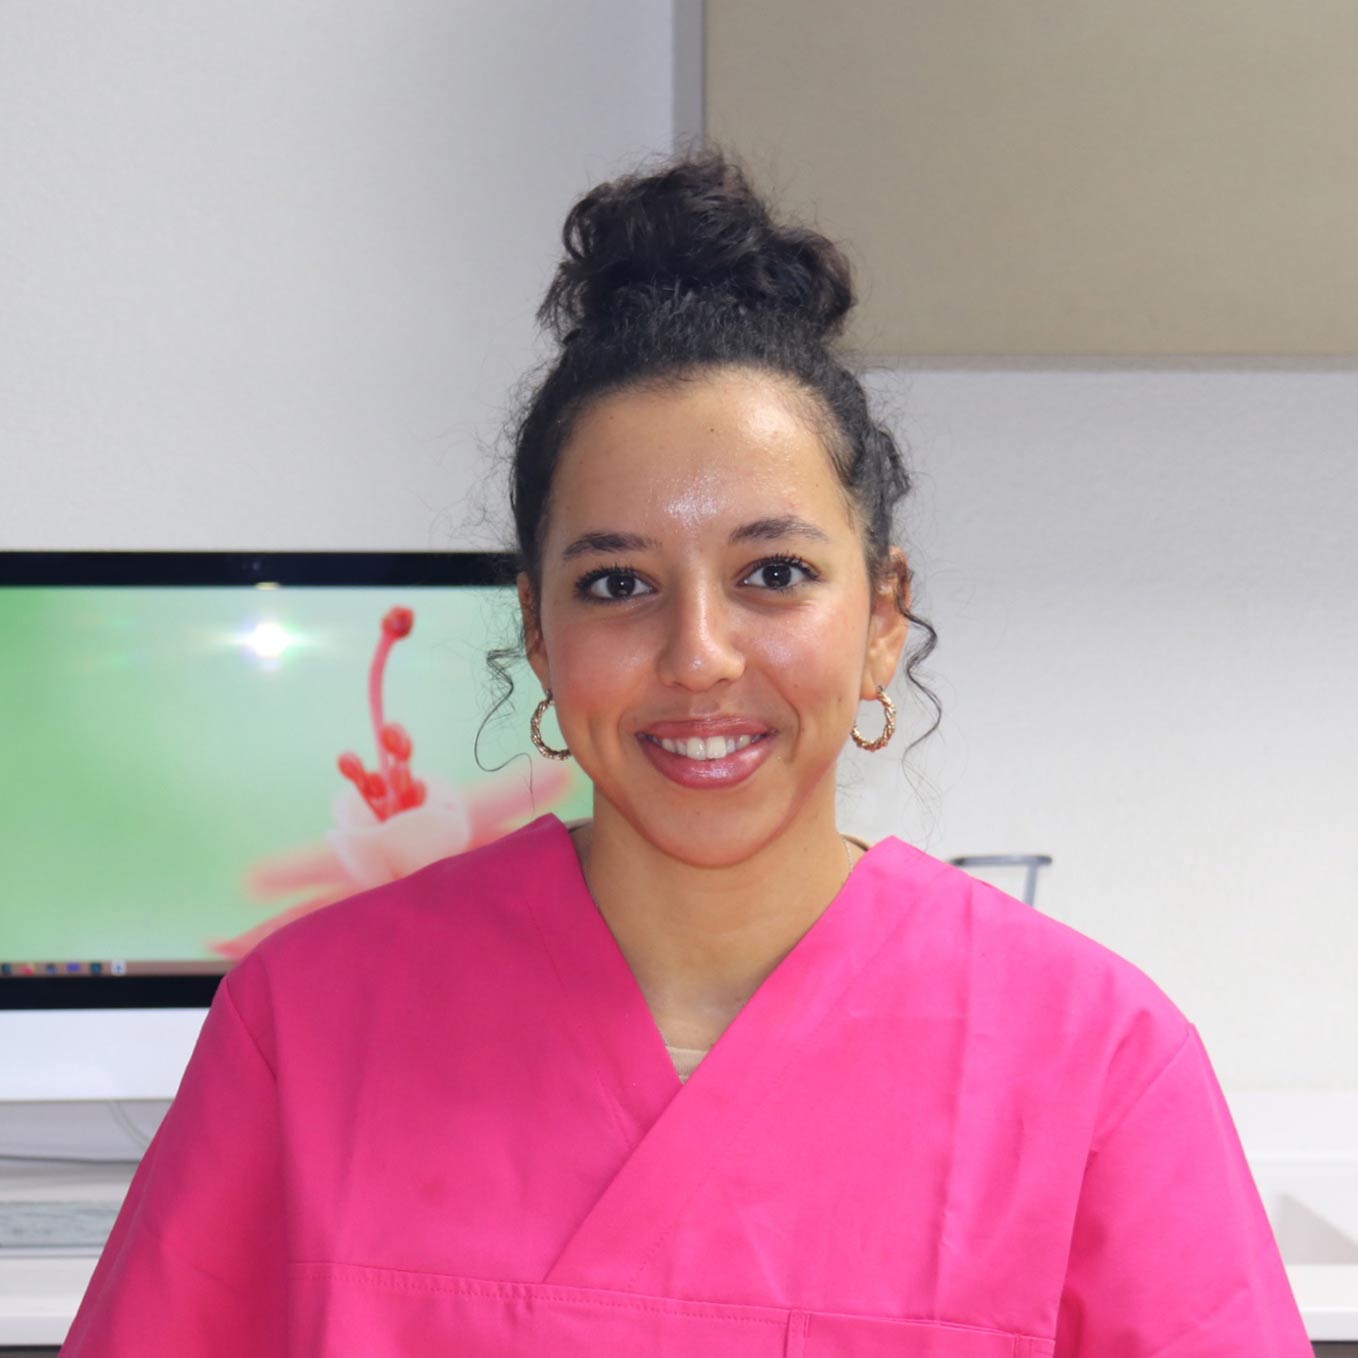 Claudia Mendes est hygiéniste dentaire à Bulle, elle pratique les détartrages et les blanchiment dentaire